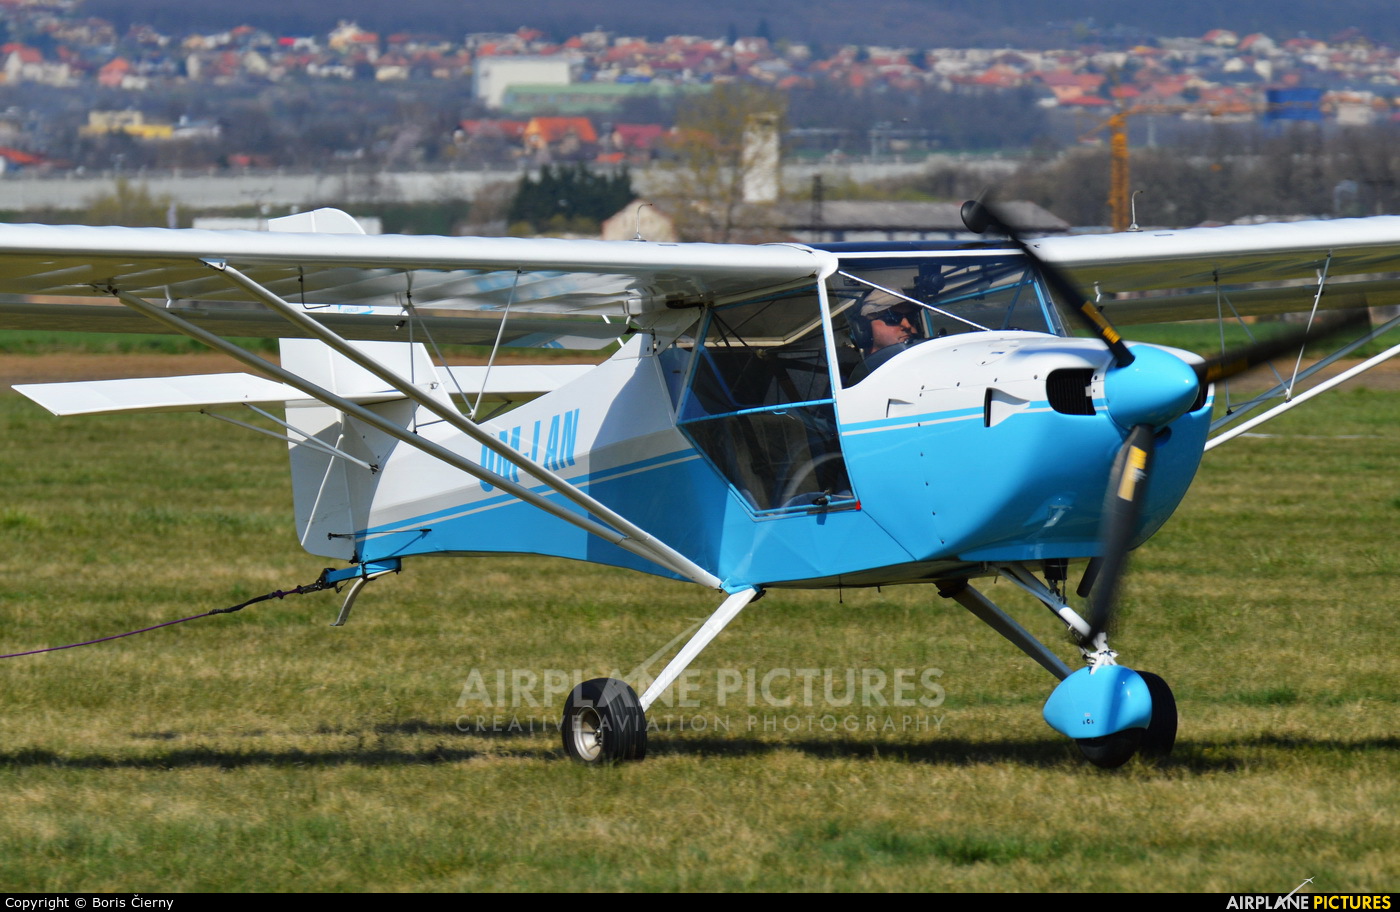 Aeroklub Nitra OM-LAN aircraft at Nitra